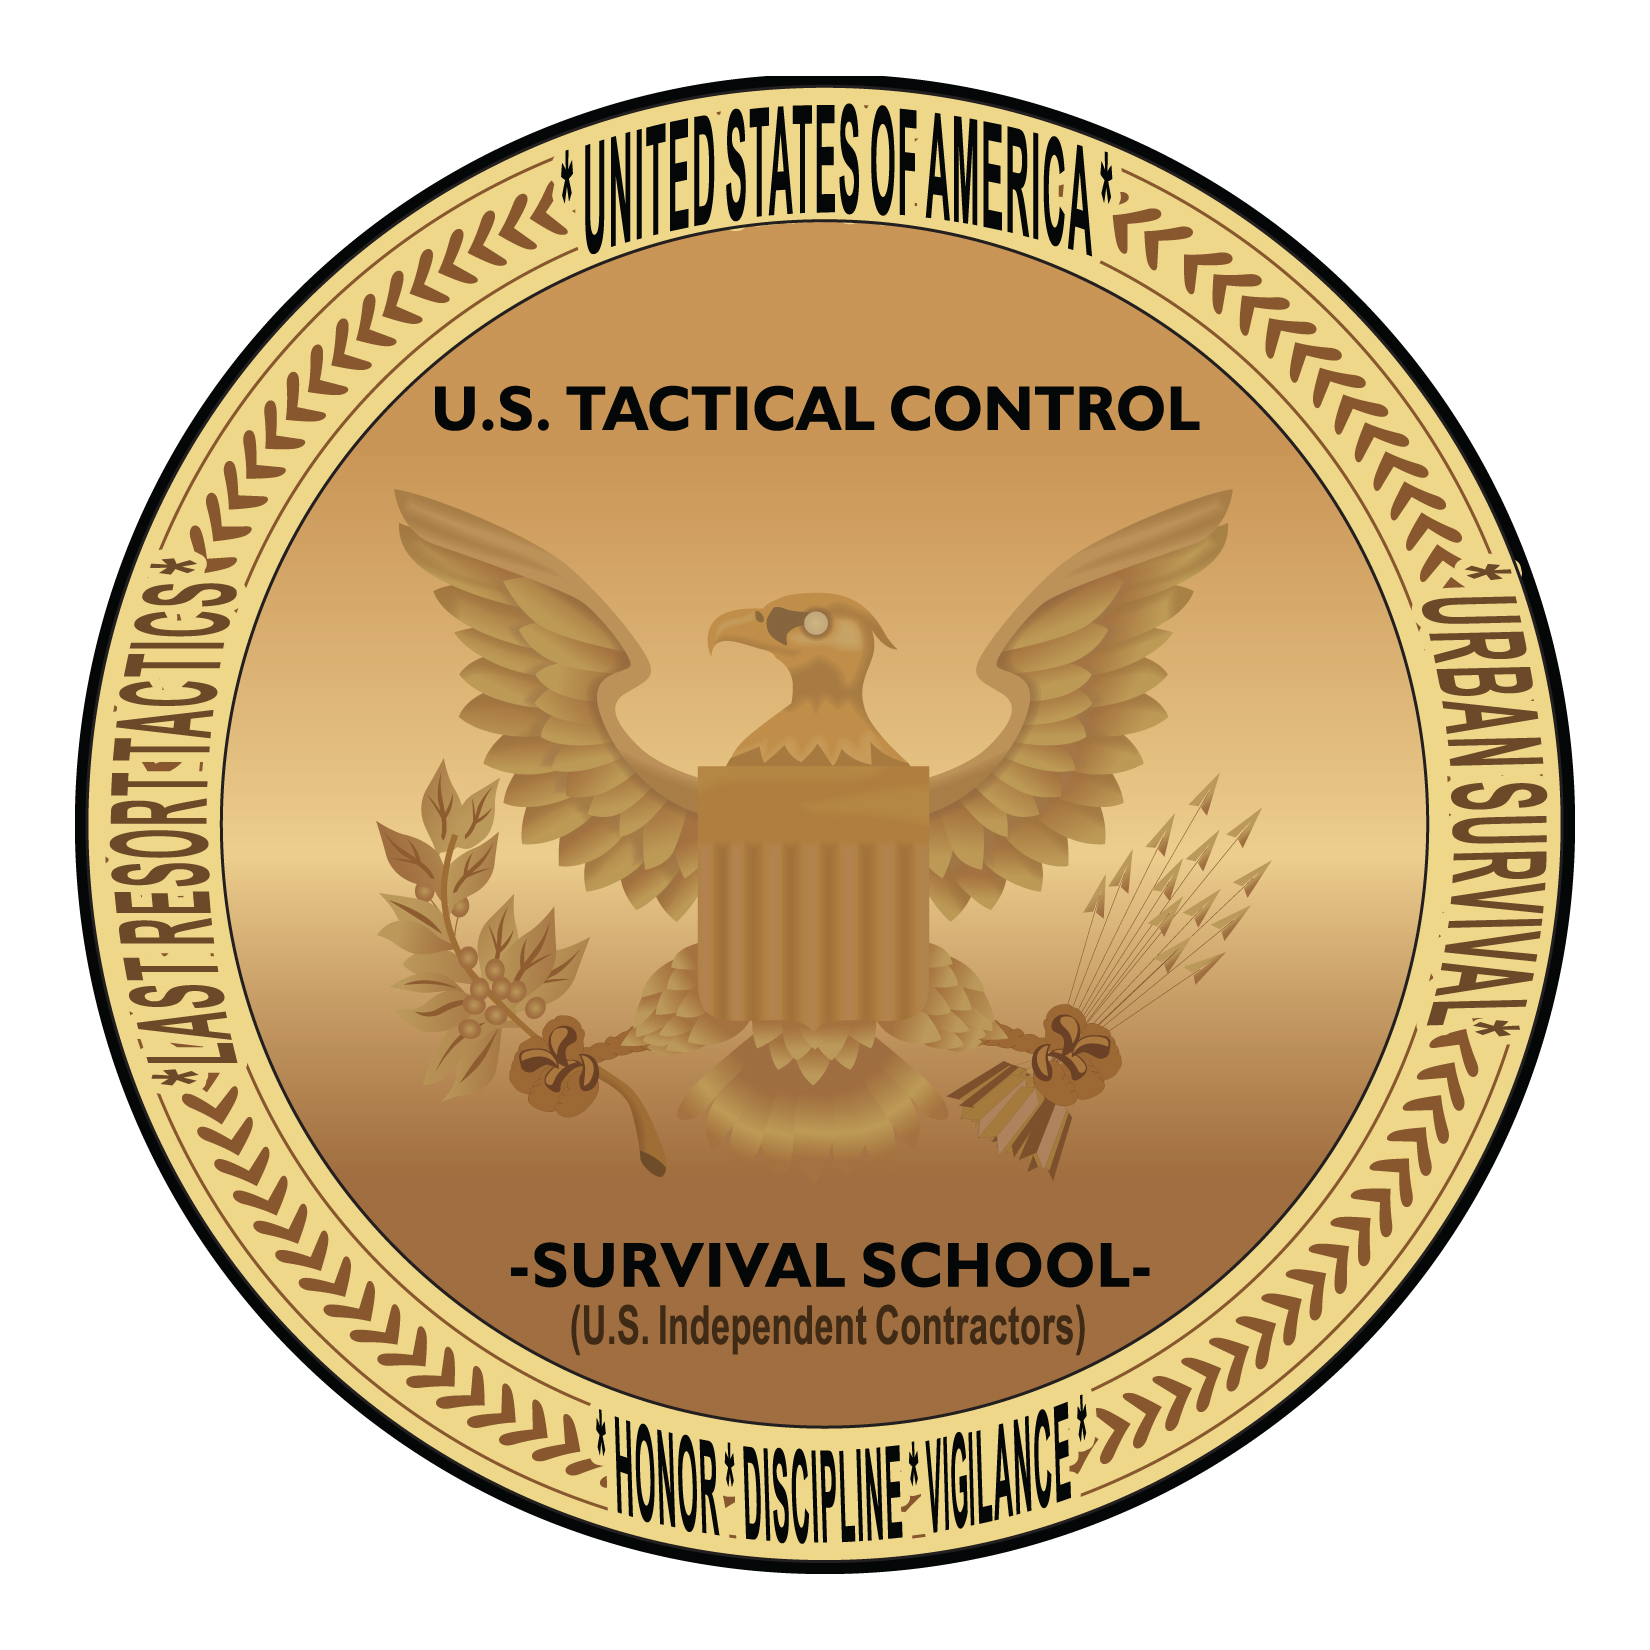 U.S. Tactical Control